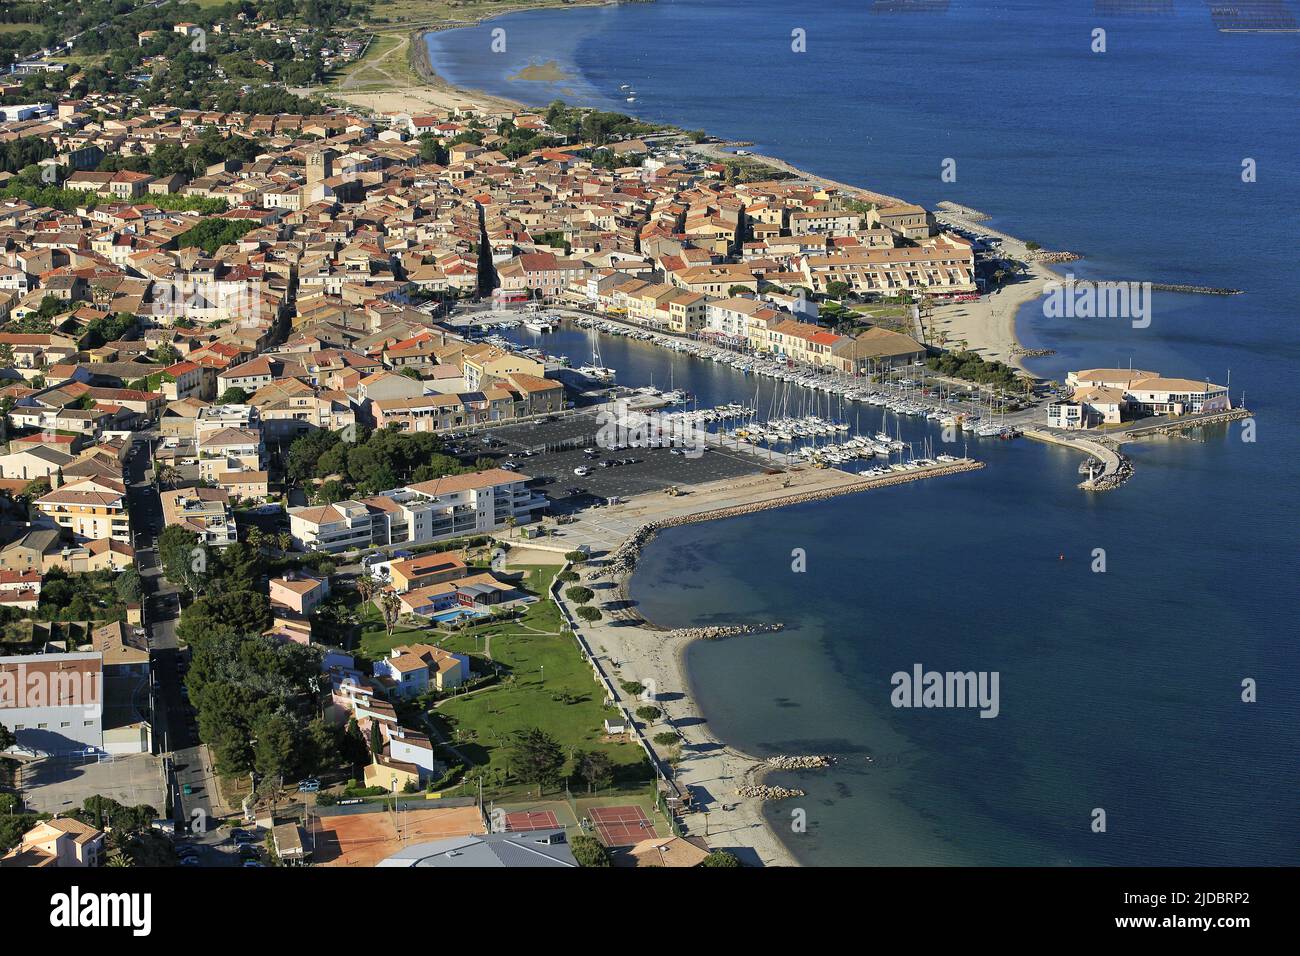 Frankreich, Hérault, Mèze, die mediterrane Hafenstadt, gelegen am Ufer des Etang de Thau mit seinen Parks hat Muscheln, (Luftaufnahme) Stockfoto